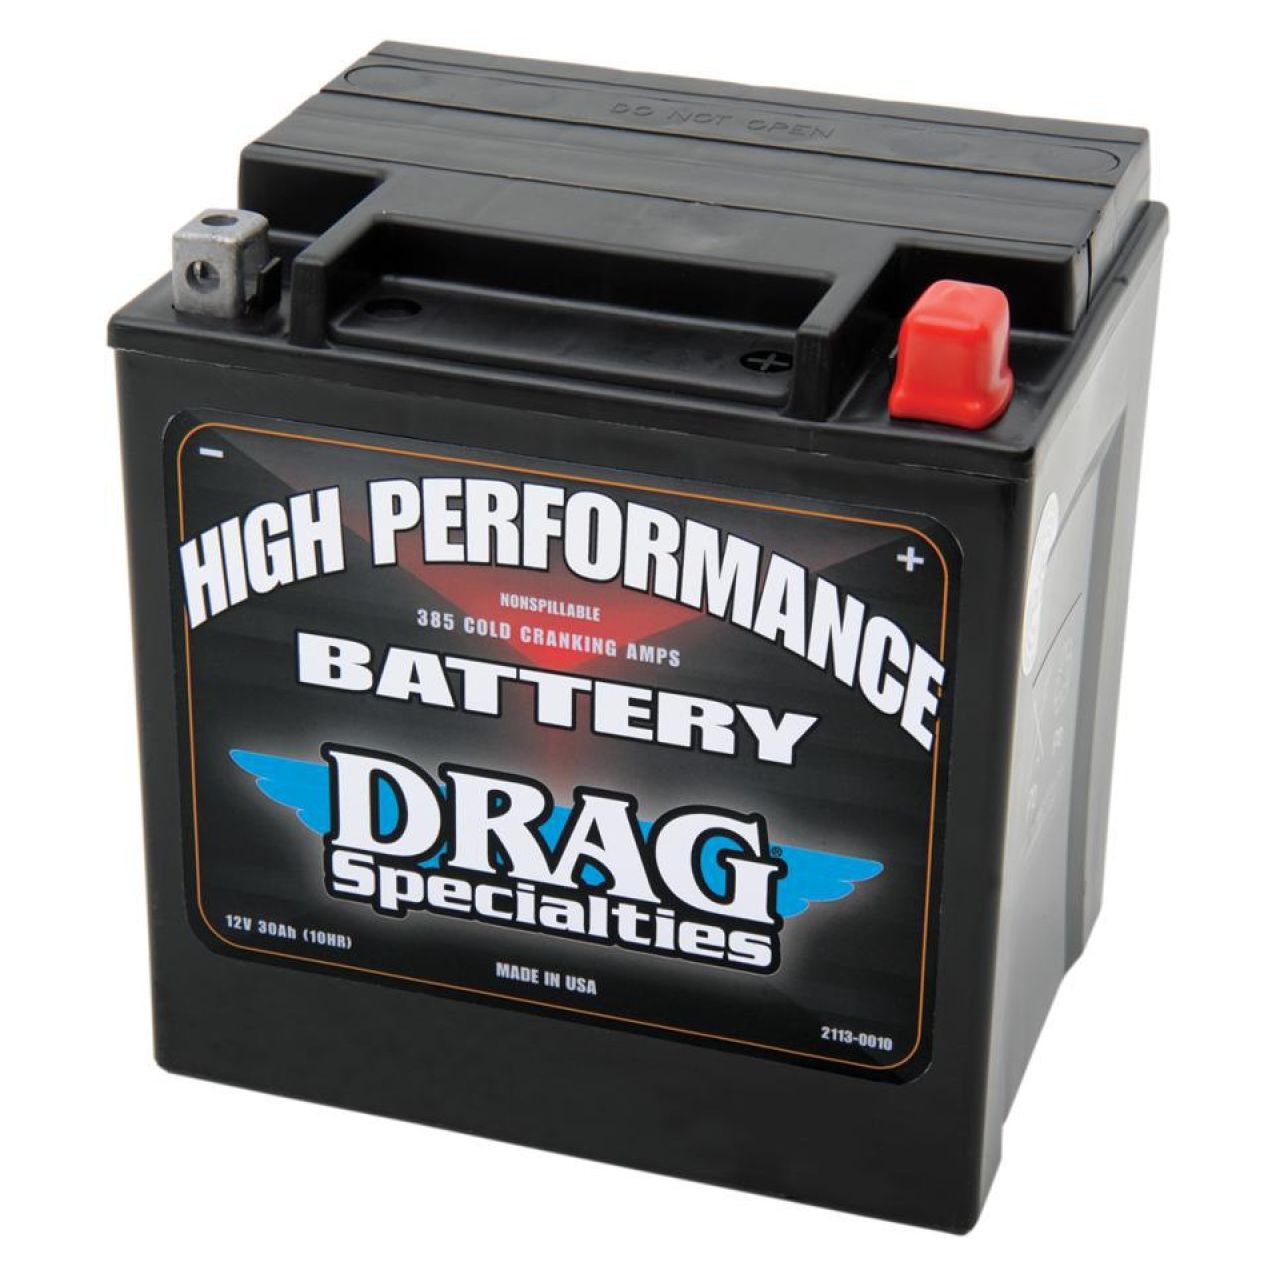 Image of Batterie Drag Specialties HAUTE PERFORMANCE ferme Type Acide Sans entretien/prête à l'emploi